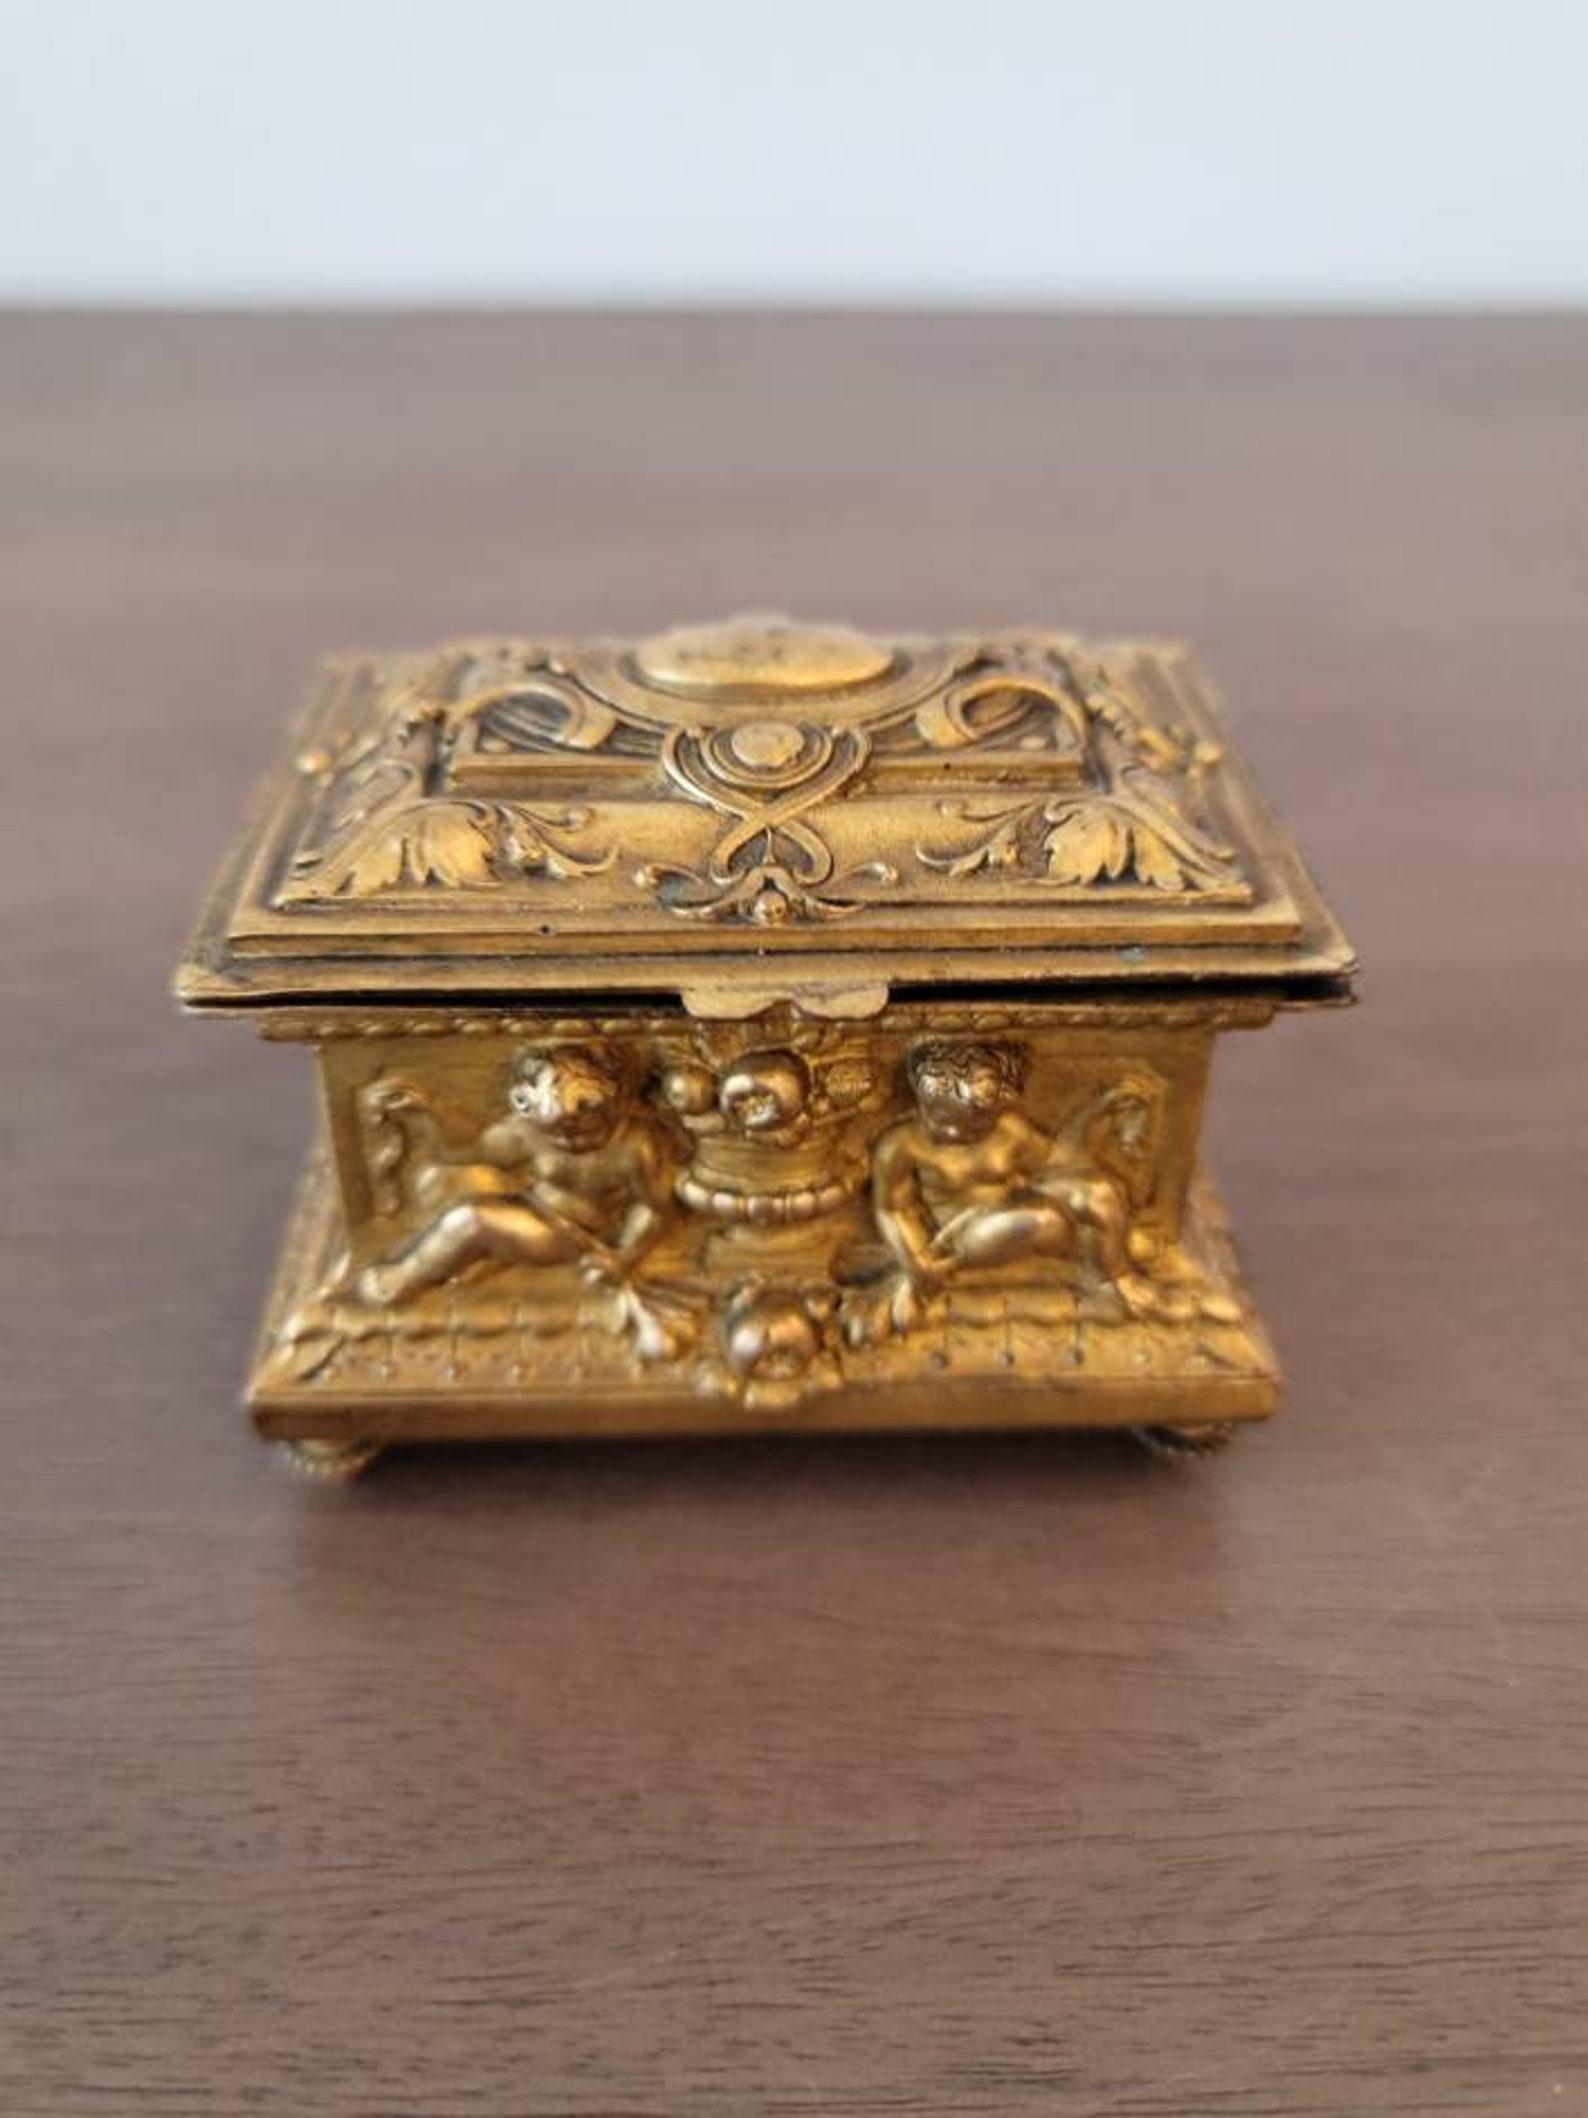 Eine feine, kleine französische Schmuckschatulle im neoklassizistischen Stil aus vergoldetem Metall. 

Das um die Wende vom 18. zum 19. Jahrhundert entstandene, außergewöhnlich gut ausgeführte, zierliche Meisterwerk hat die Form einer rechteckigen